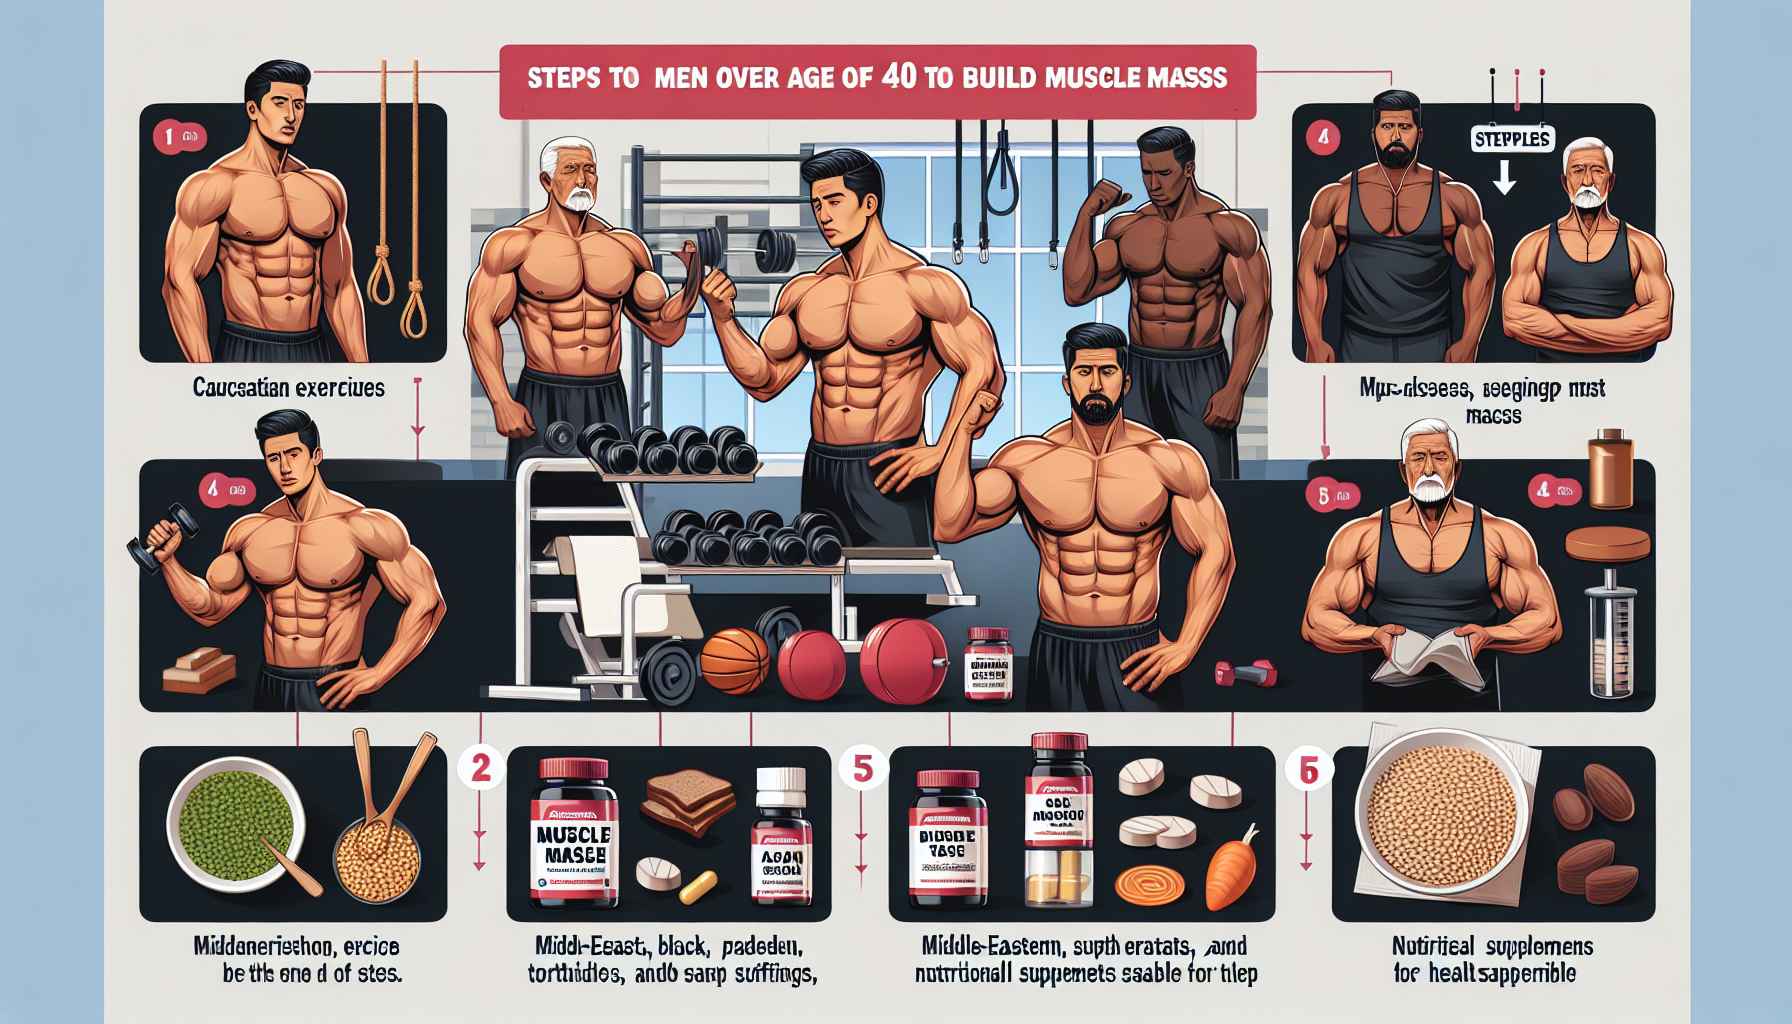 Como Homens Acima de 40 Anos Podem Ganhar Massa Muscular